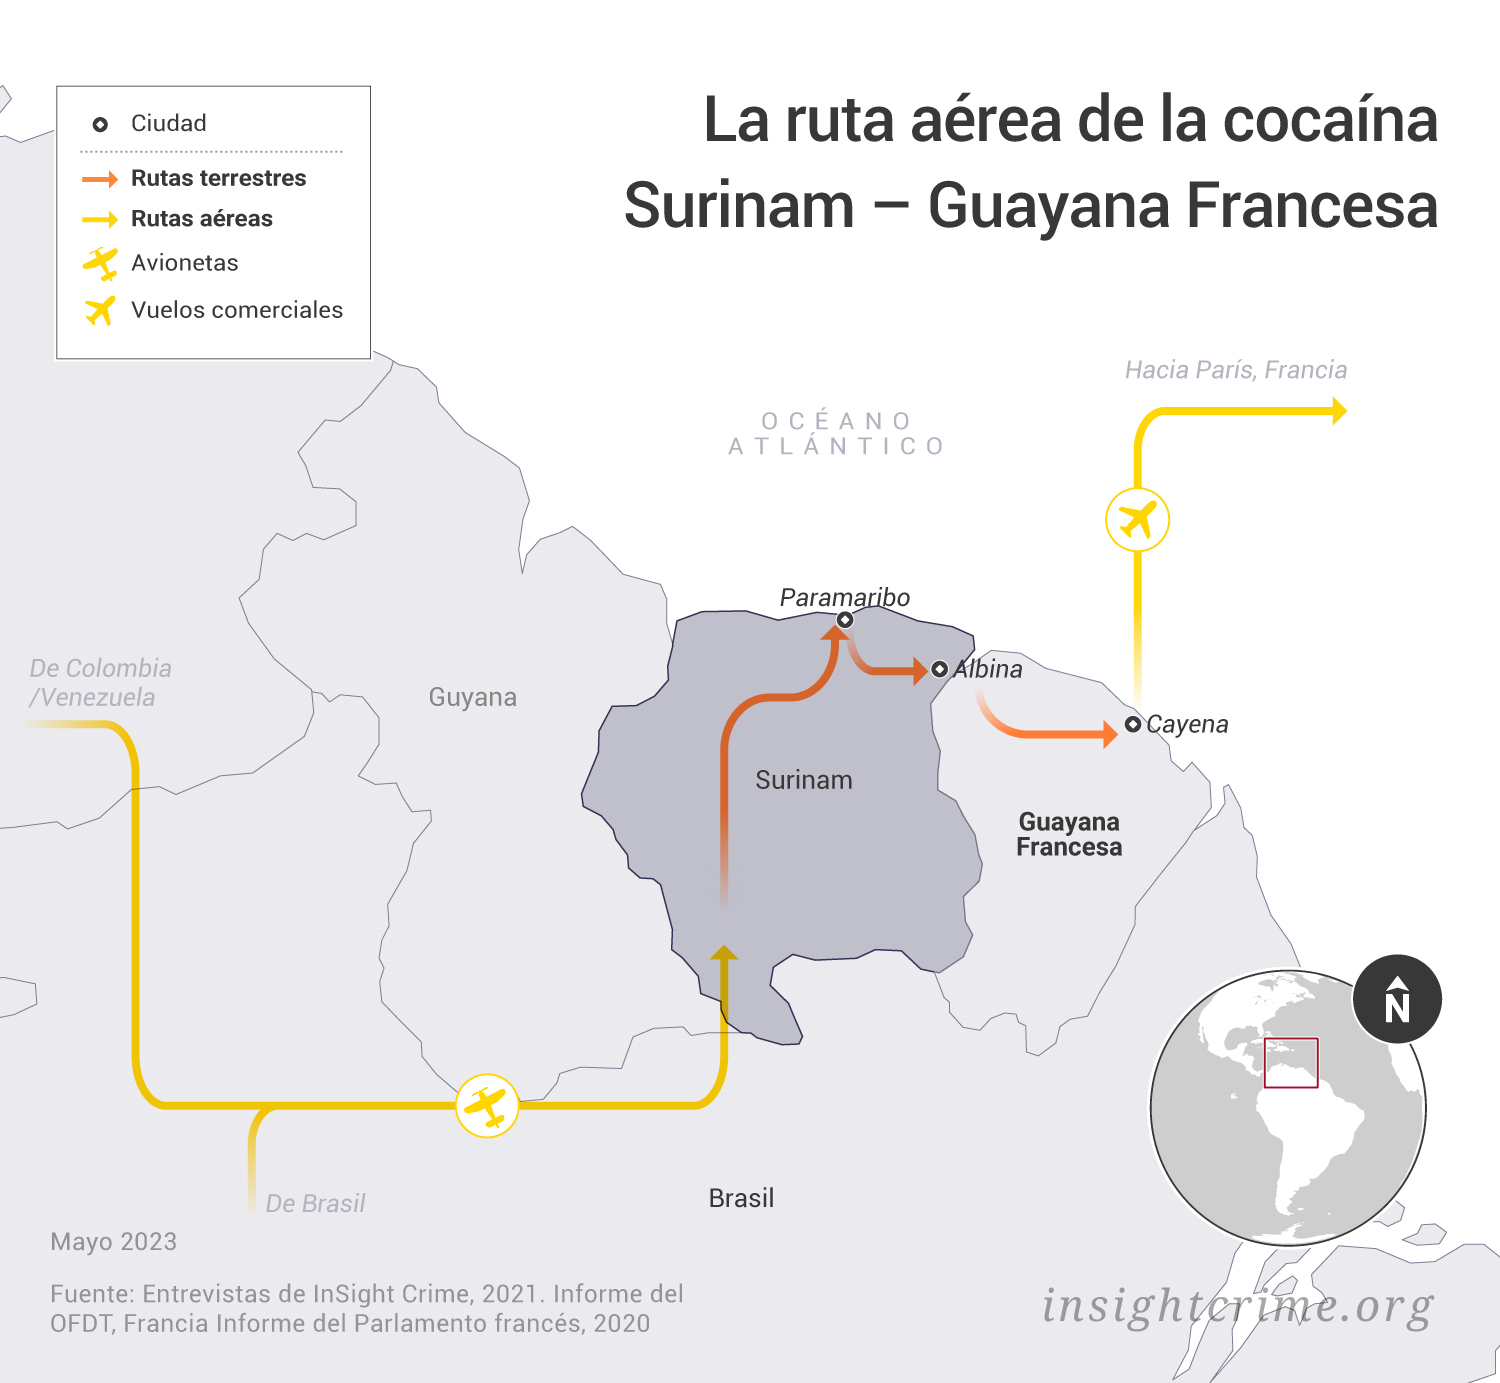 Este mapa muestra la ruta aérea de tráfico de cocaína entre Colombia y Venezuela, Surinam, Guyana Francesa y Francia